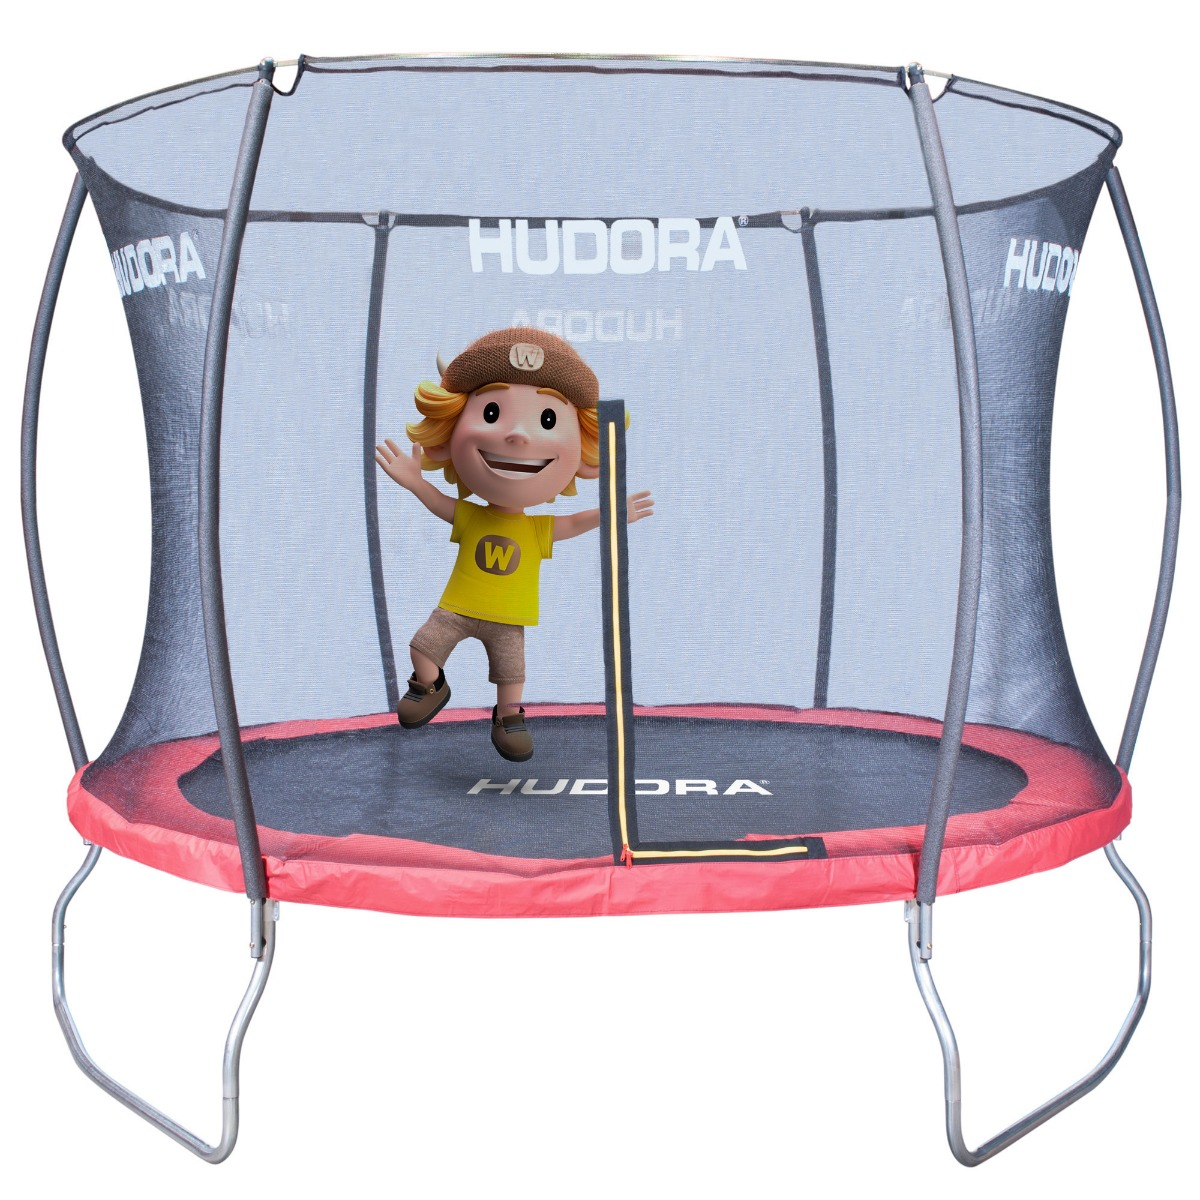 Trampolin für Kinder outdoor Hudora Fantastic 300V